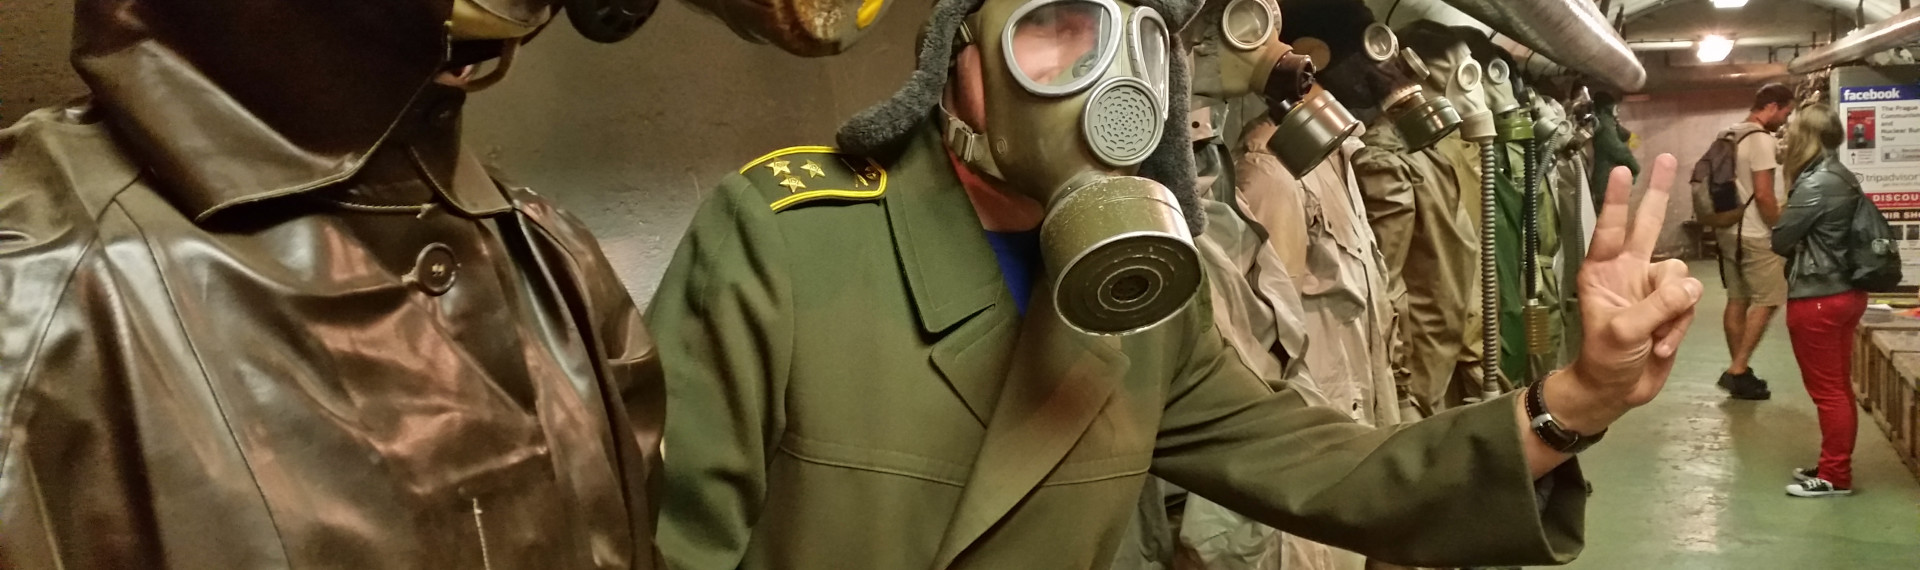 Udforsk atombunkerne - Besøg de Tjekkiske bunkere